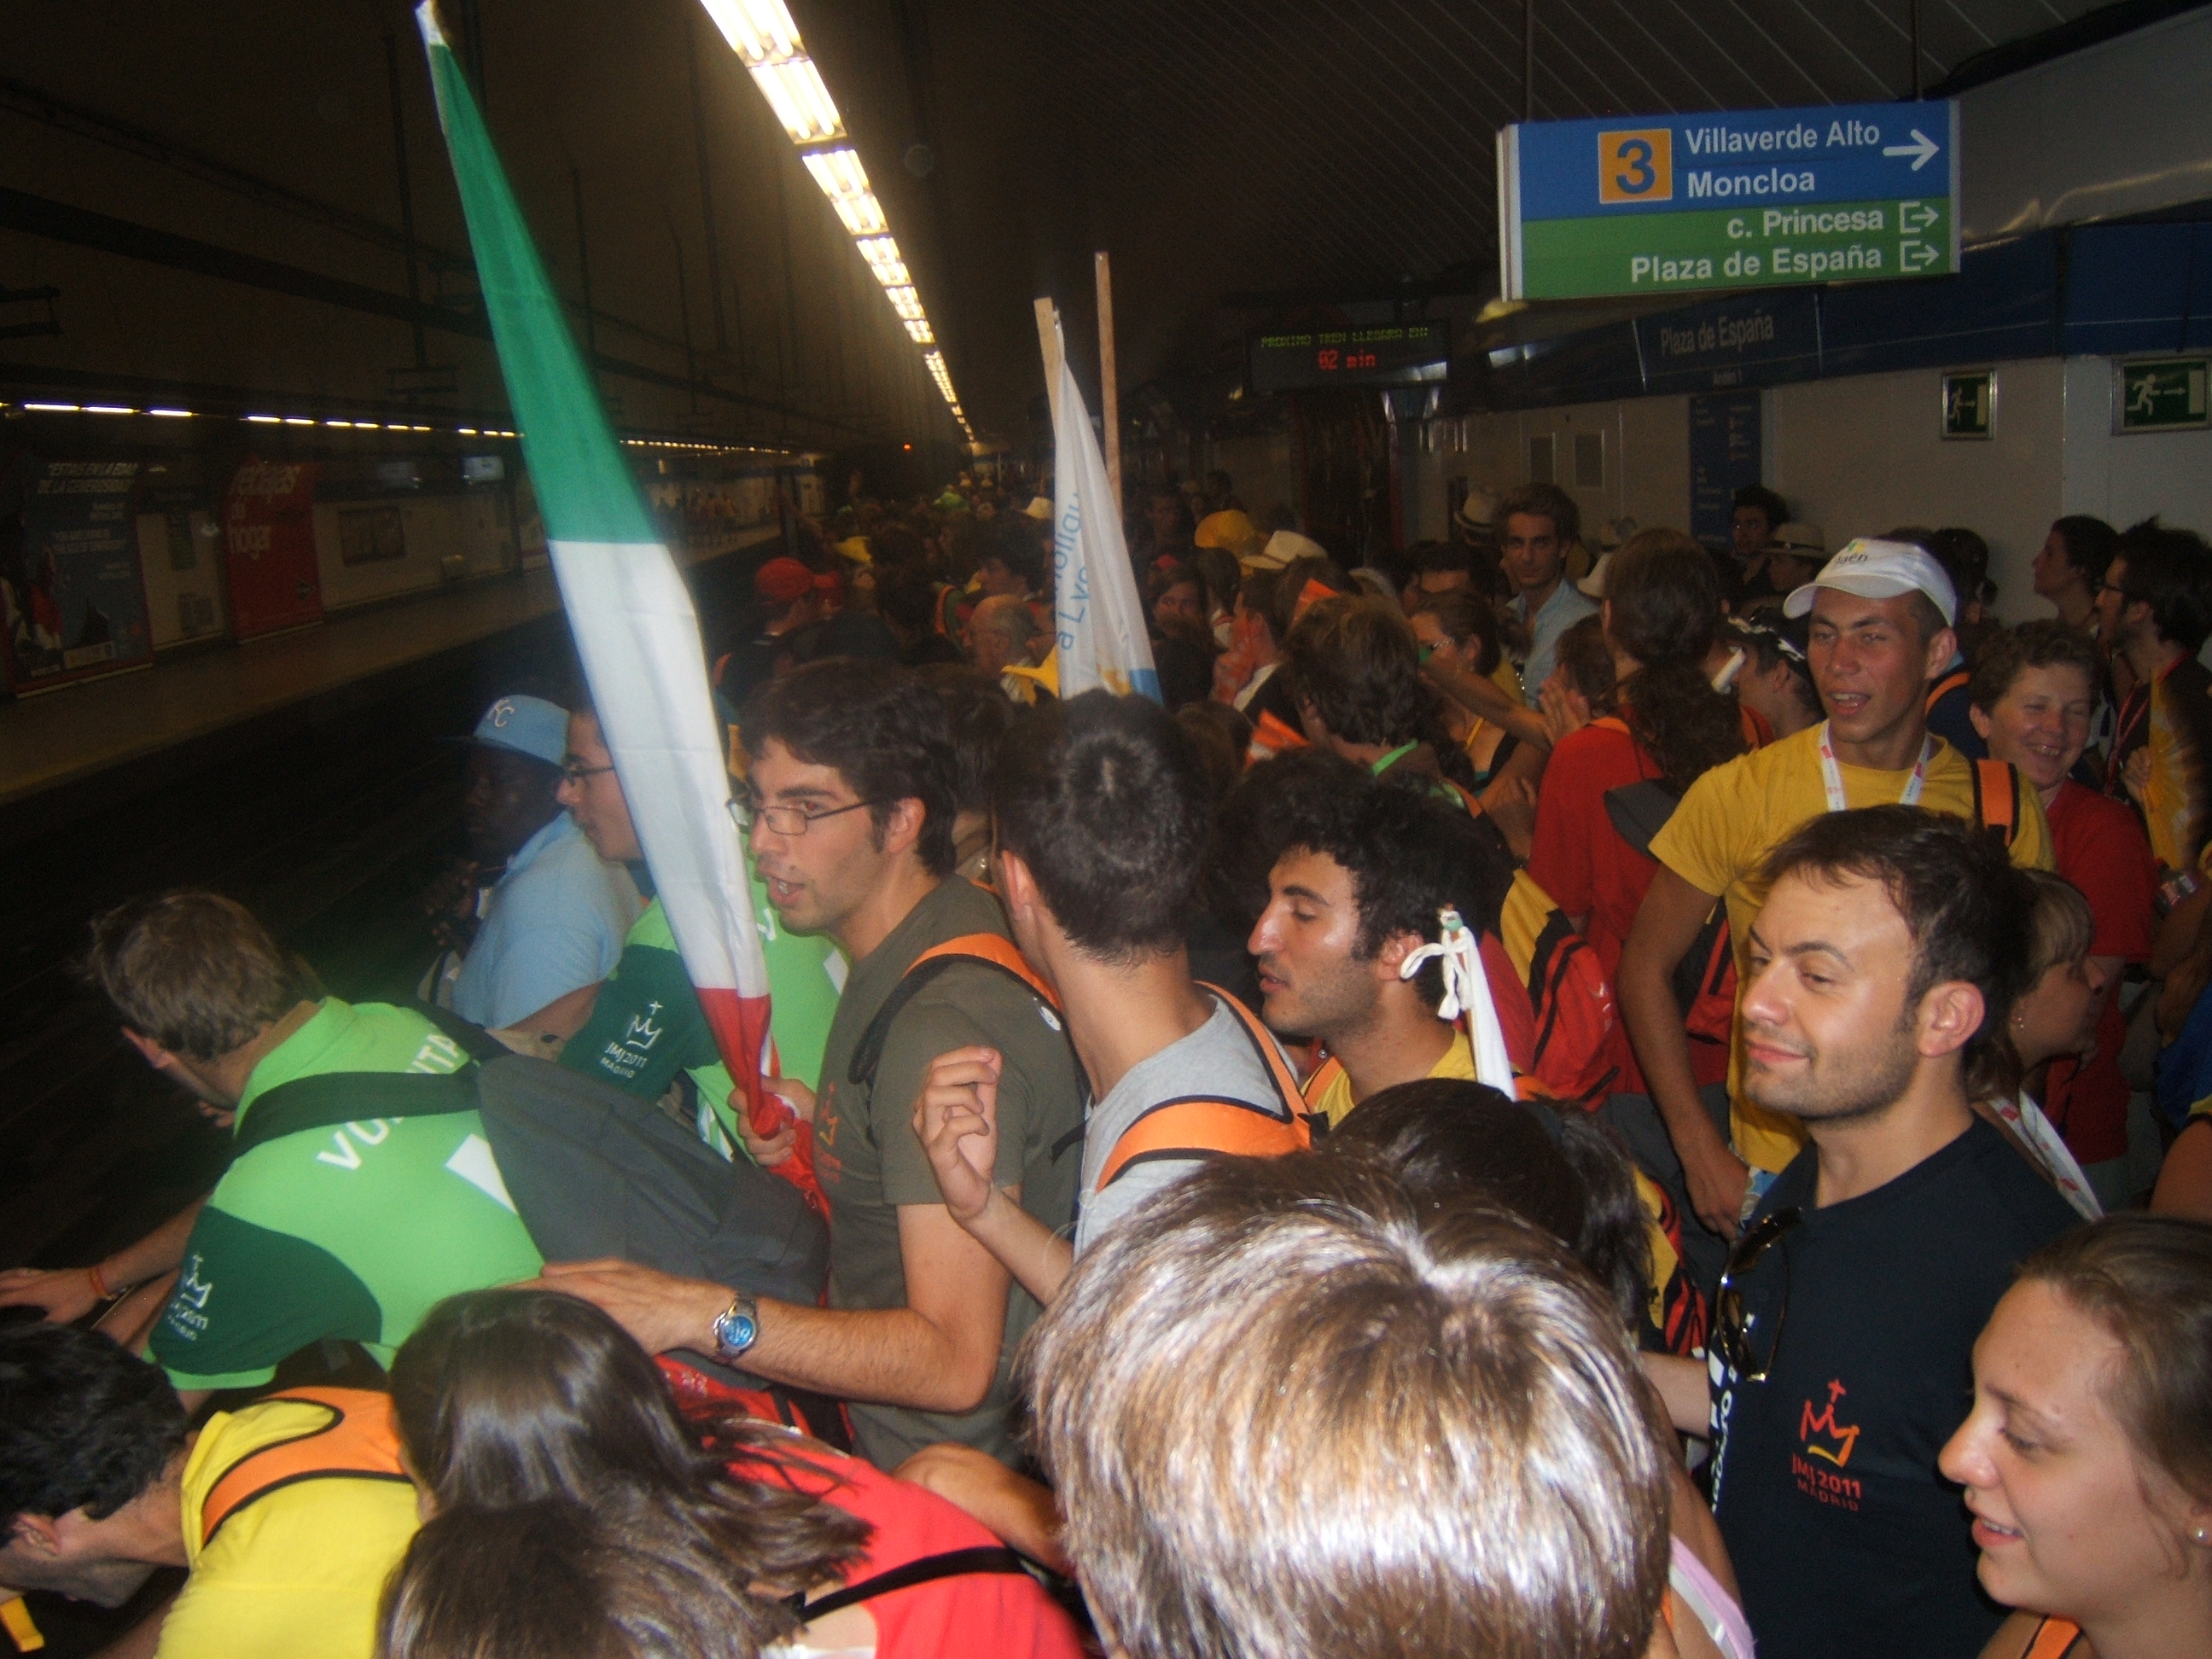 Le métro de Madrid pendant les JMJ!